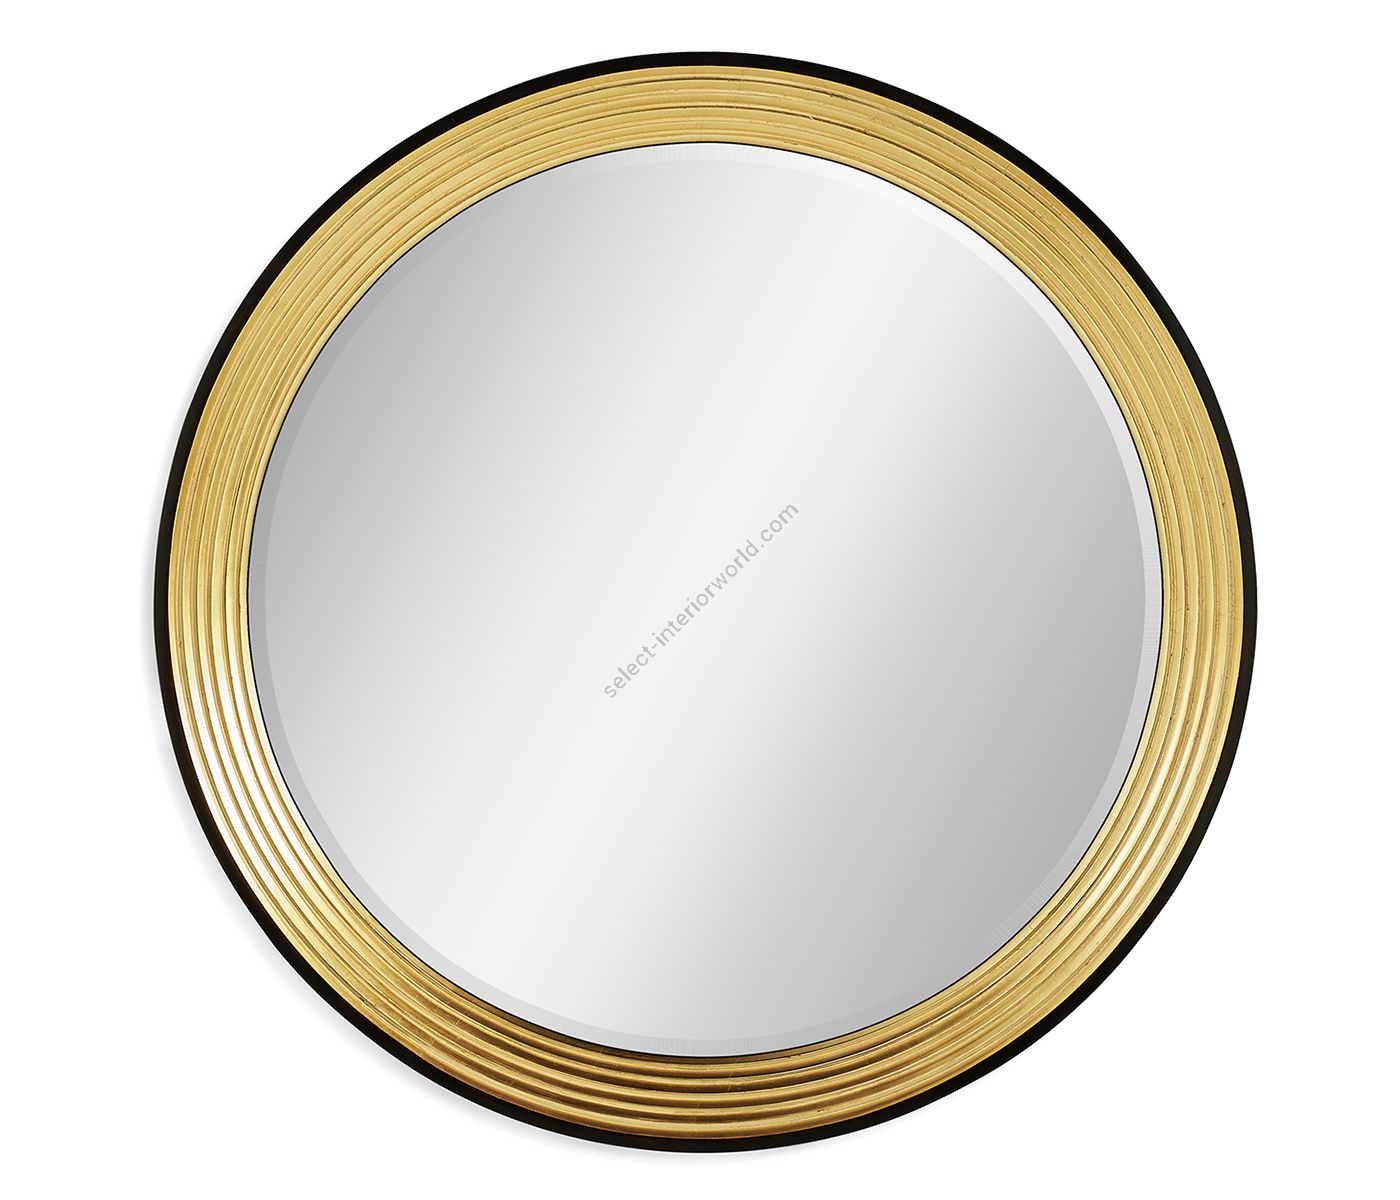 Jonathan Charles / Zeitgenössischer runder Spiegel vergoldet / 494462-GIL